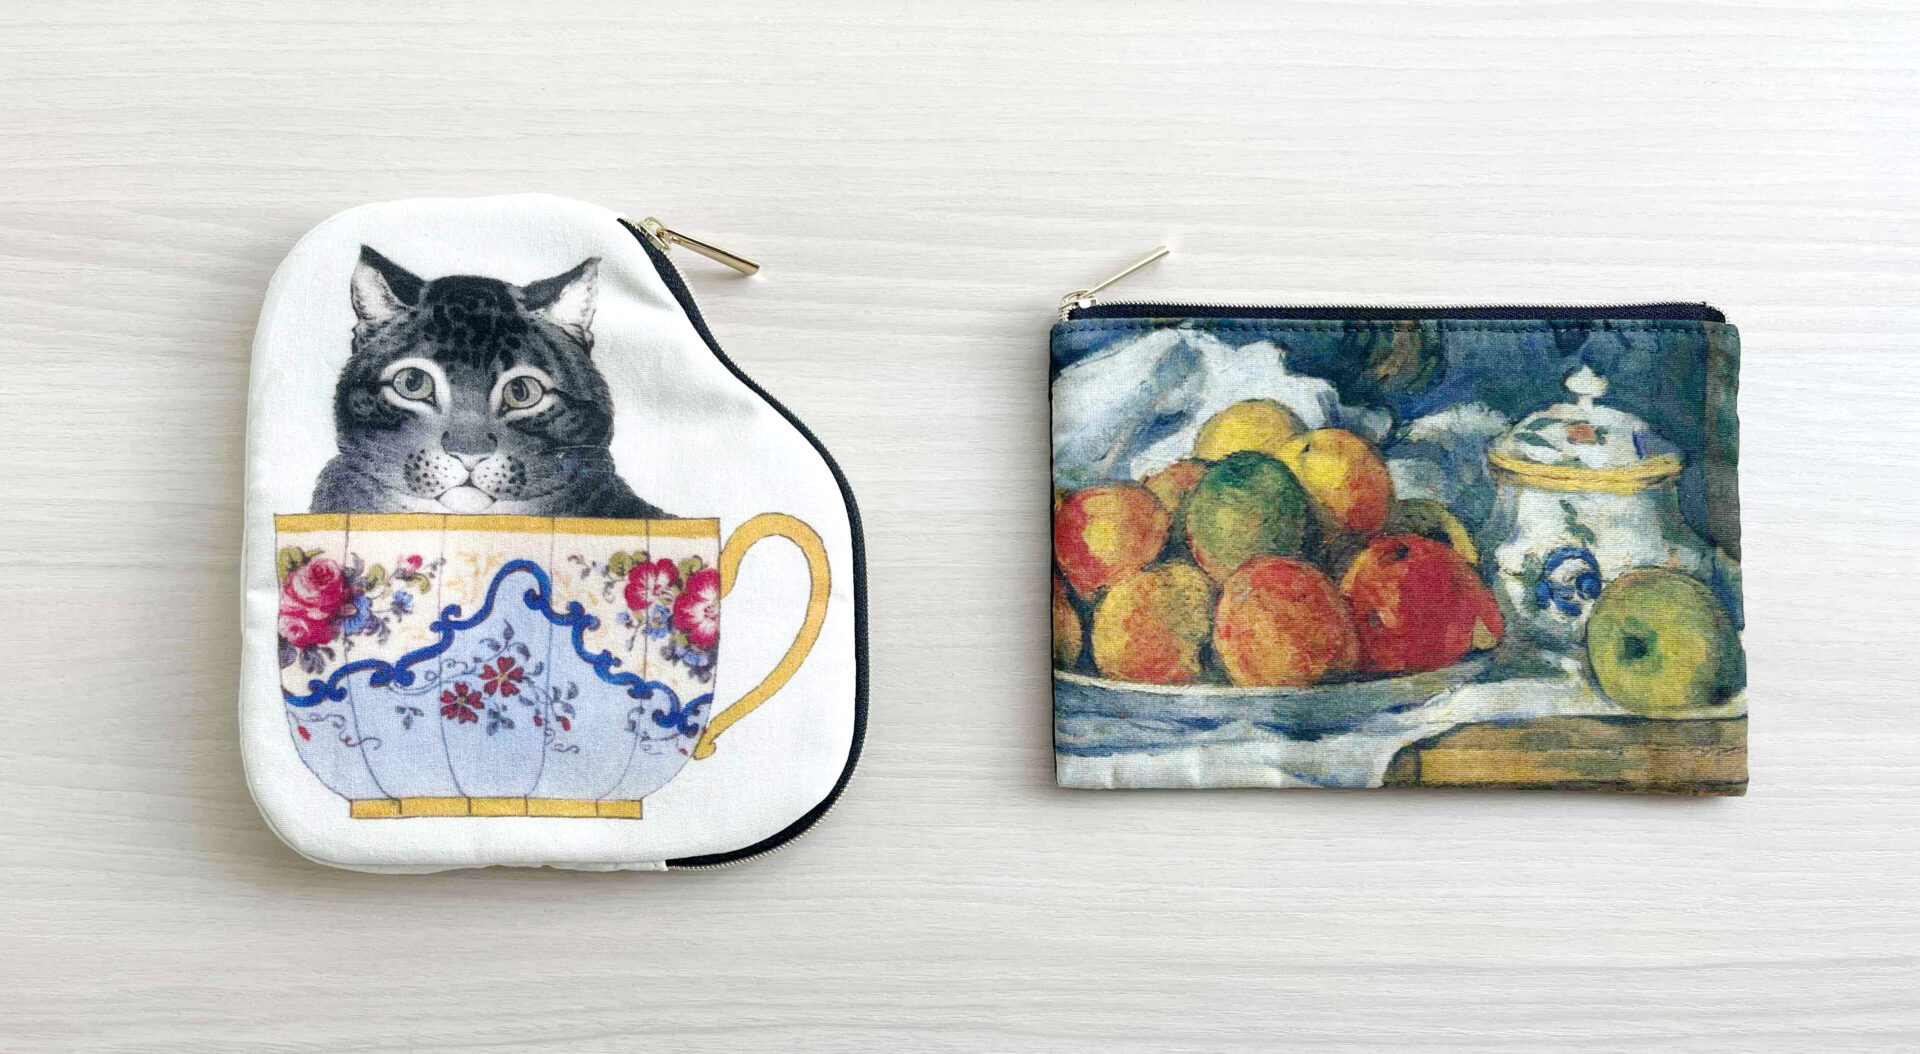 ティーカップにハイった猫のイラストが大きくえがかれたダイカットポーチとセザンヌのりんごプレートの絵画がえがかれたフラットポーチが並べておかれている写真